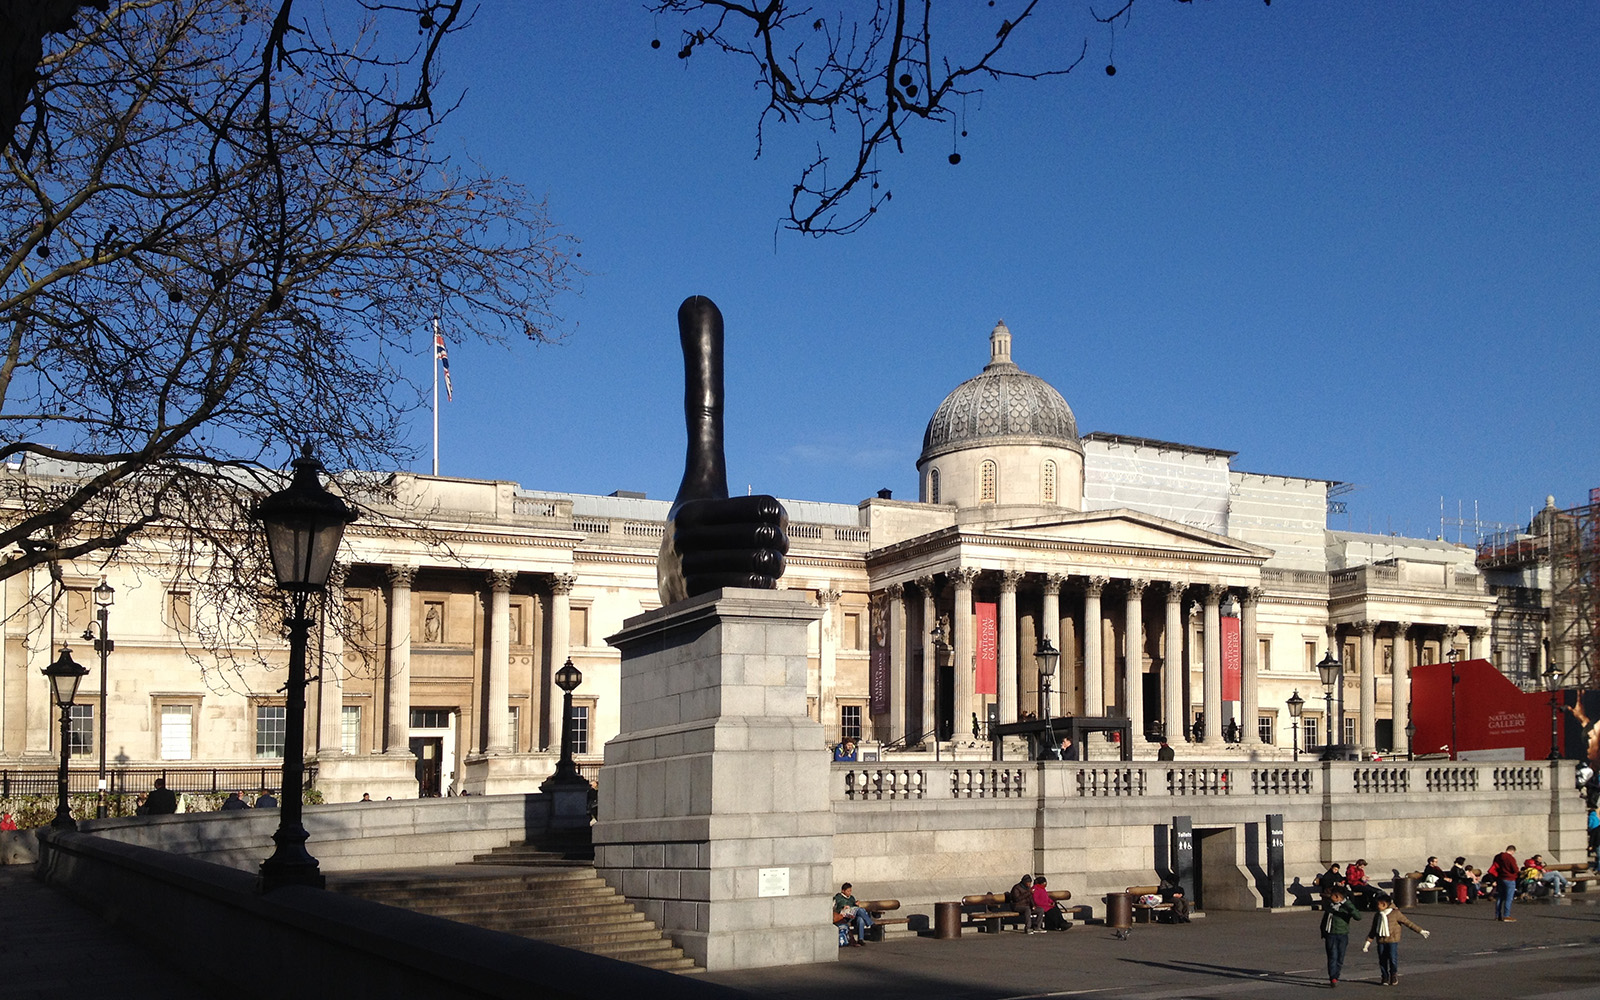 National Gallery Trafalgar Square 22 December 2016